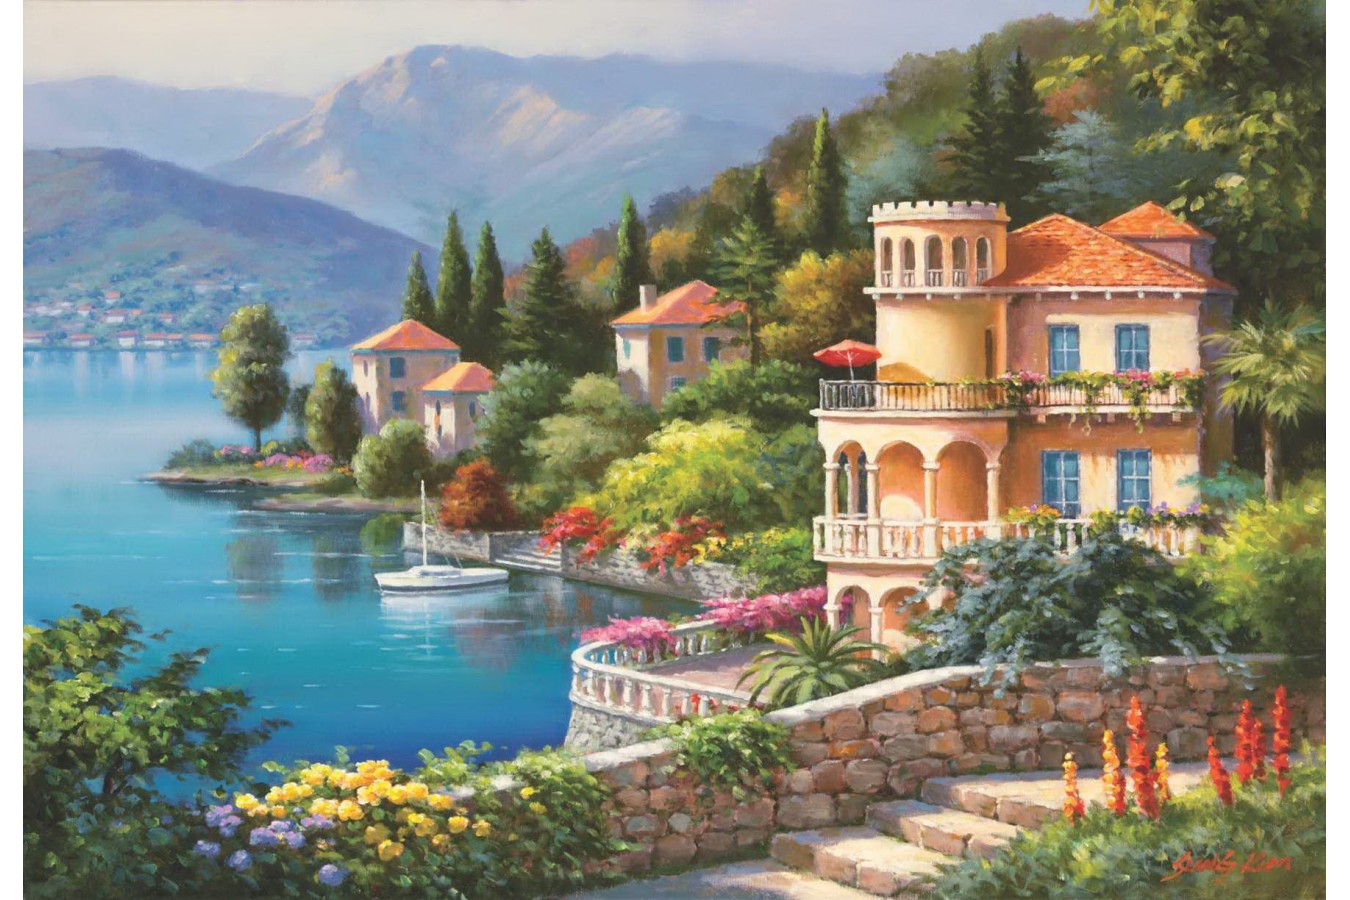 Puzzle Anatolian - Lakeside Villa, 2000 piese (3915)